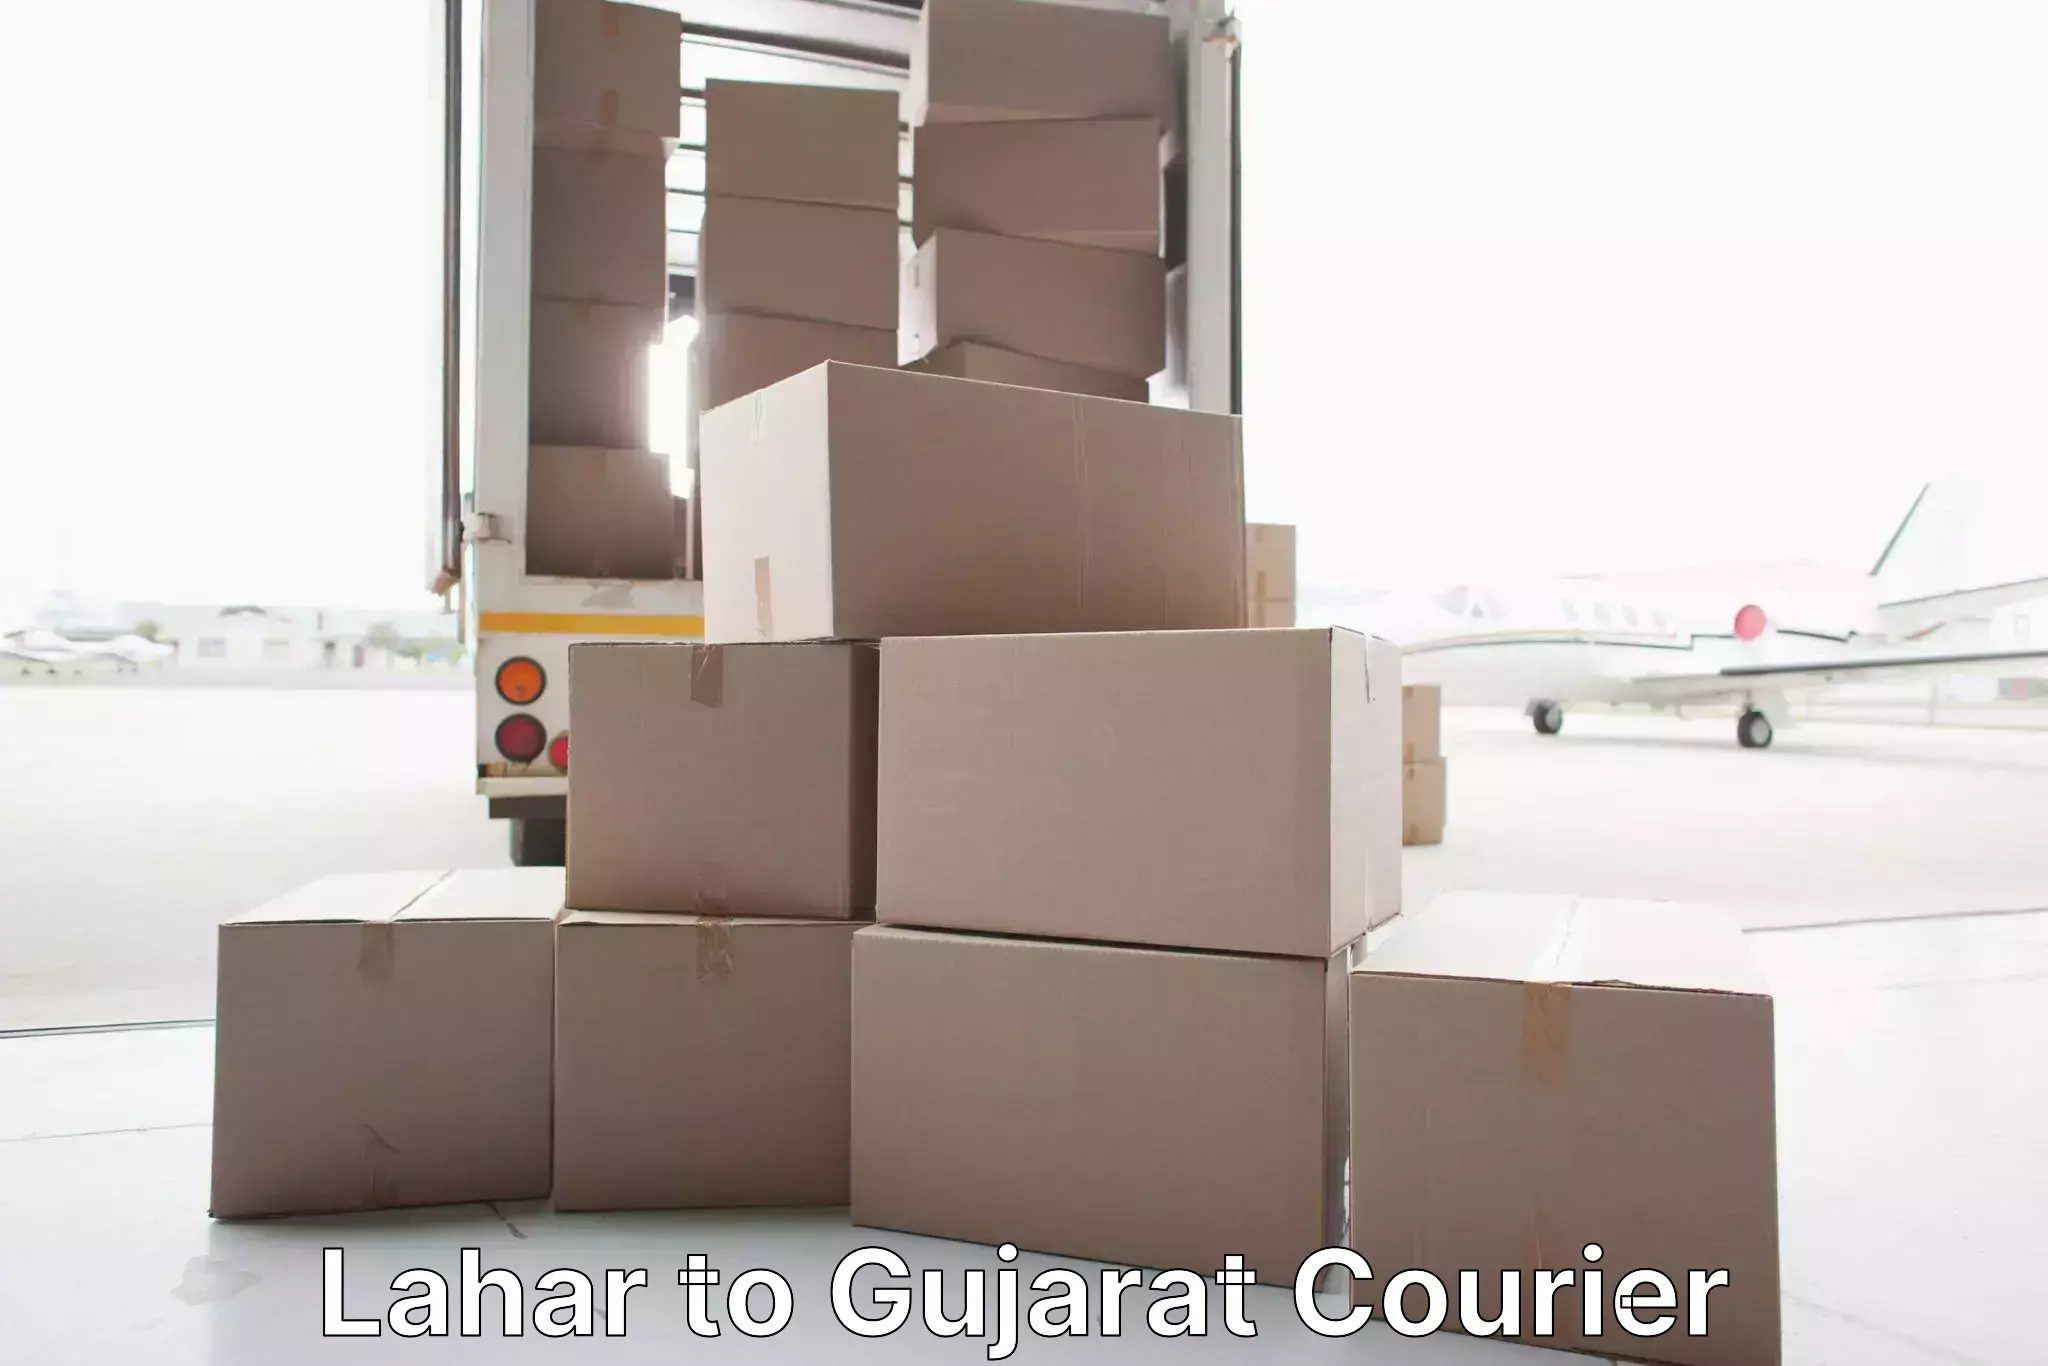 Furniture moving service Lahar to Gujarat